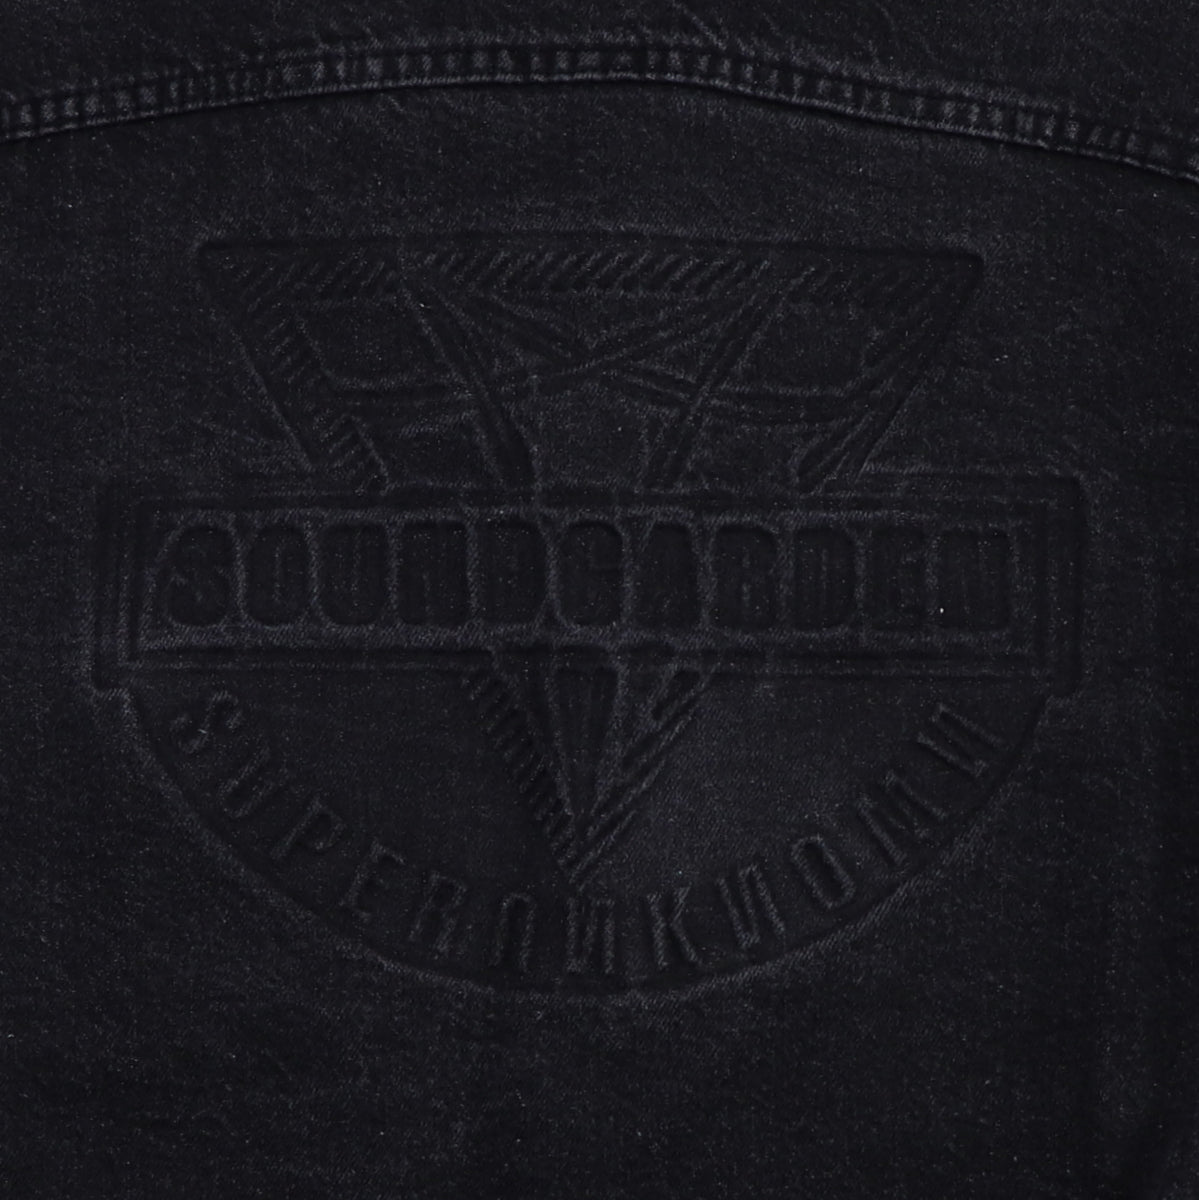 1994 Soundgarden Superunknown Promo Denim Jacket